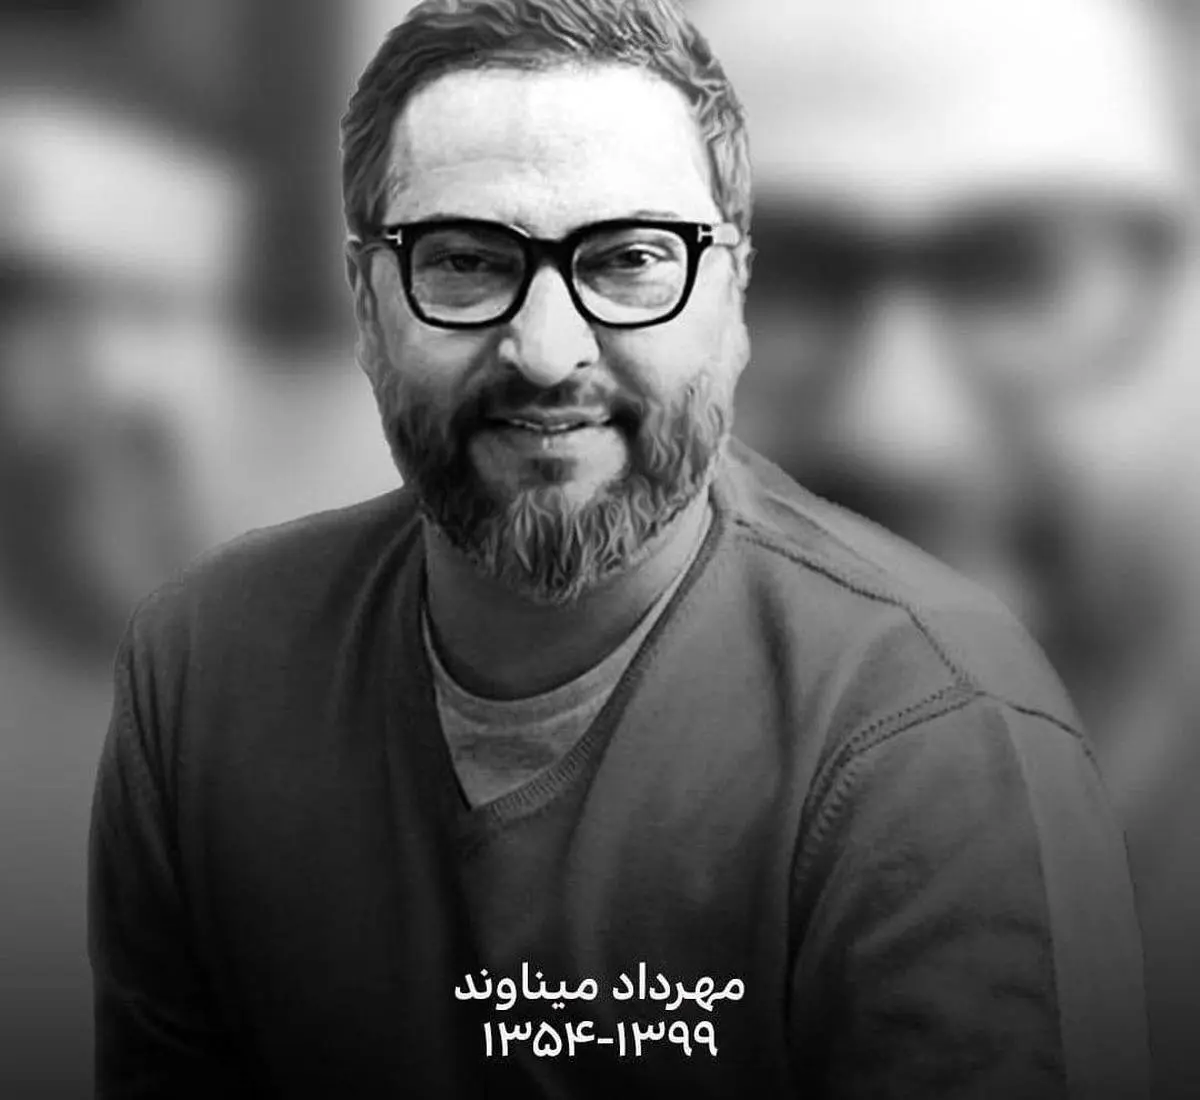 واکنش فوتبالیست ها و هنرمندان به درگذشت مهرداد میناوند + عکس